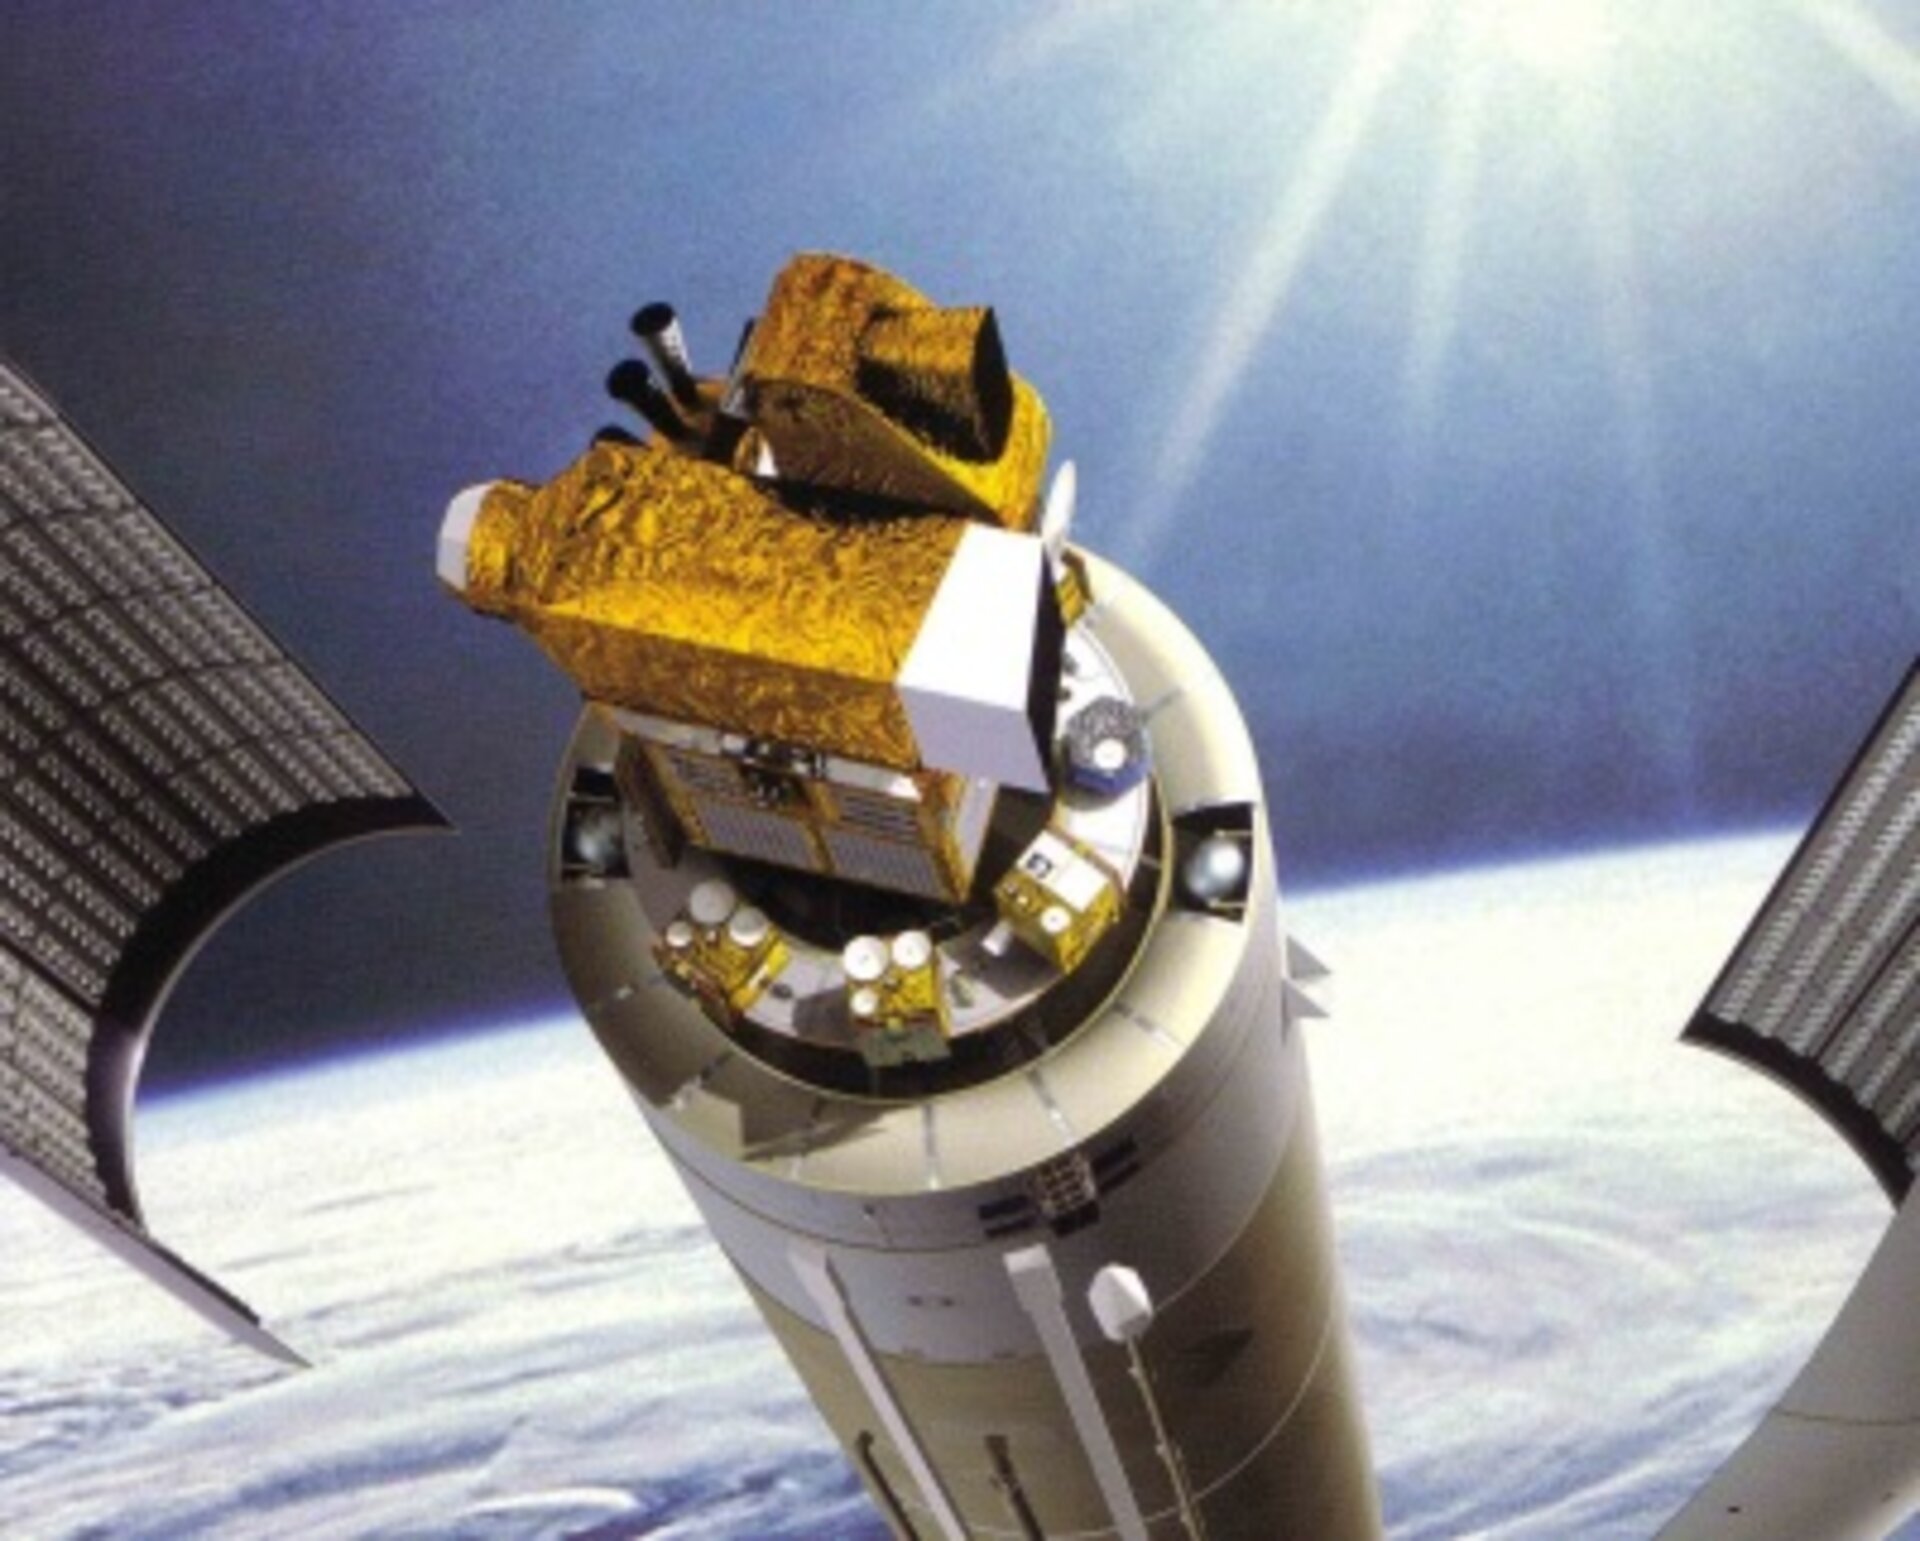 Vue d'artiste d'Hélios-2 doté d'un puissant instrument de prises de vues